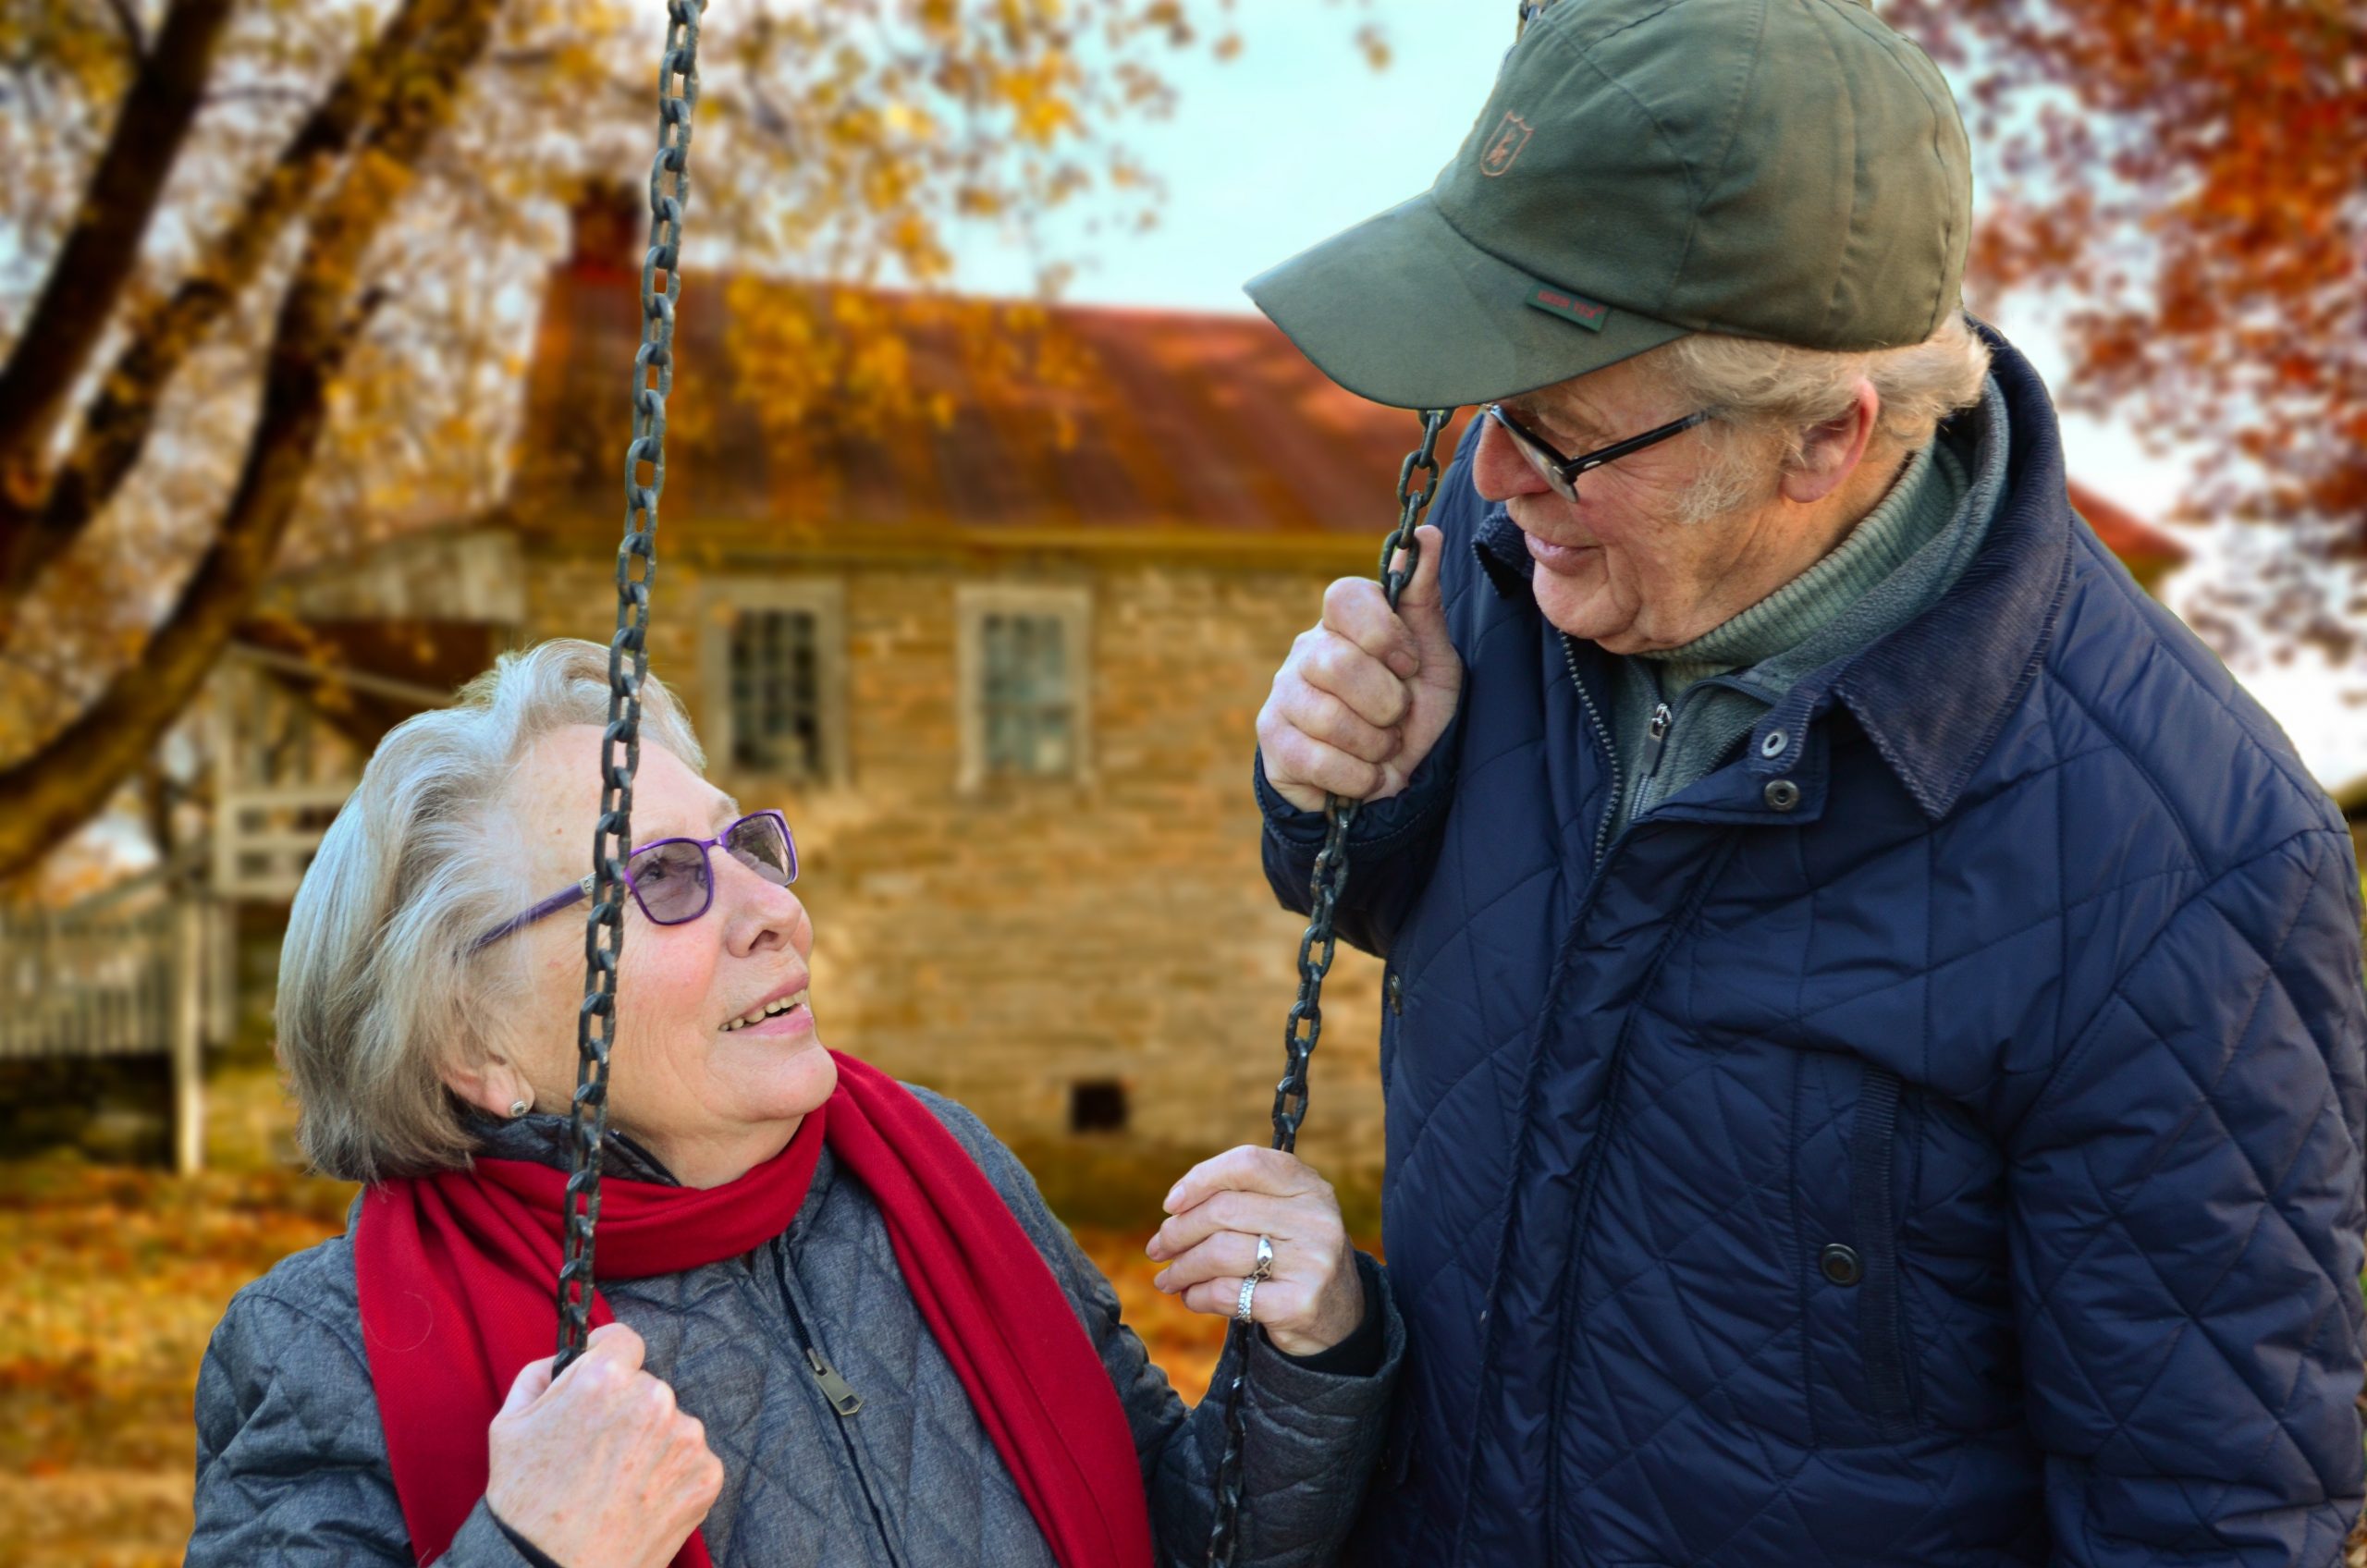 Τι νοσταλγούν πιο πολύ οι συνταξιούχοι – Αποκαλυπτική έρευνα του Χάρβαρντ